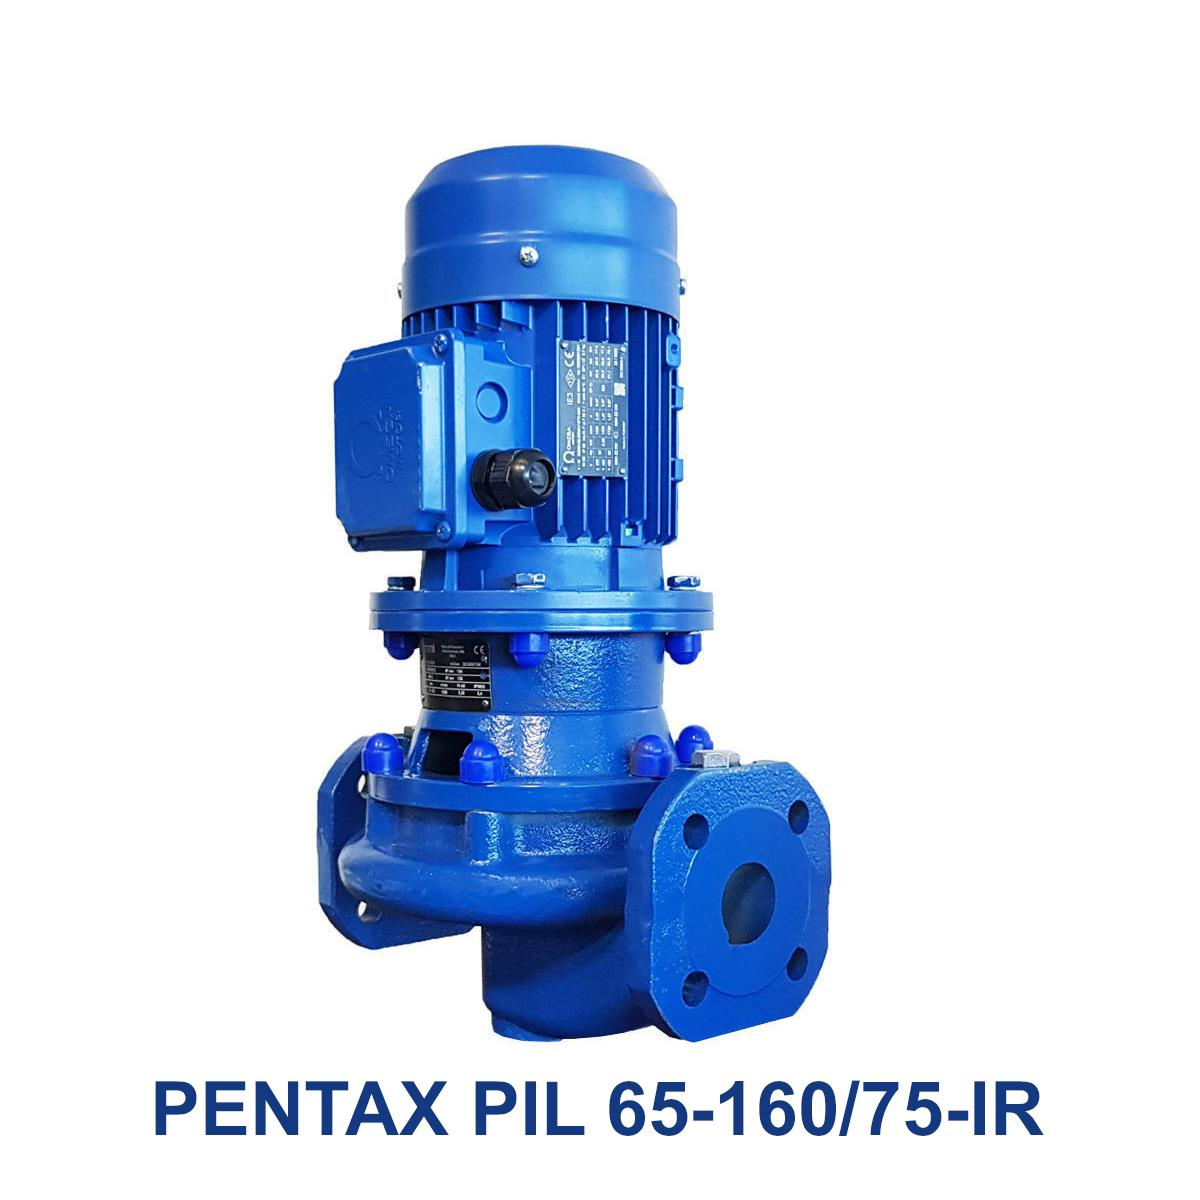 PENTAX-PIL-65-160-75-IR